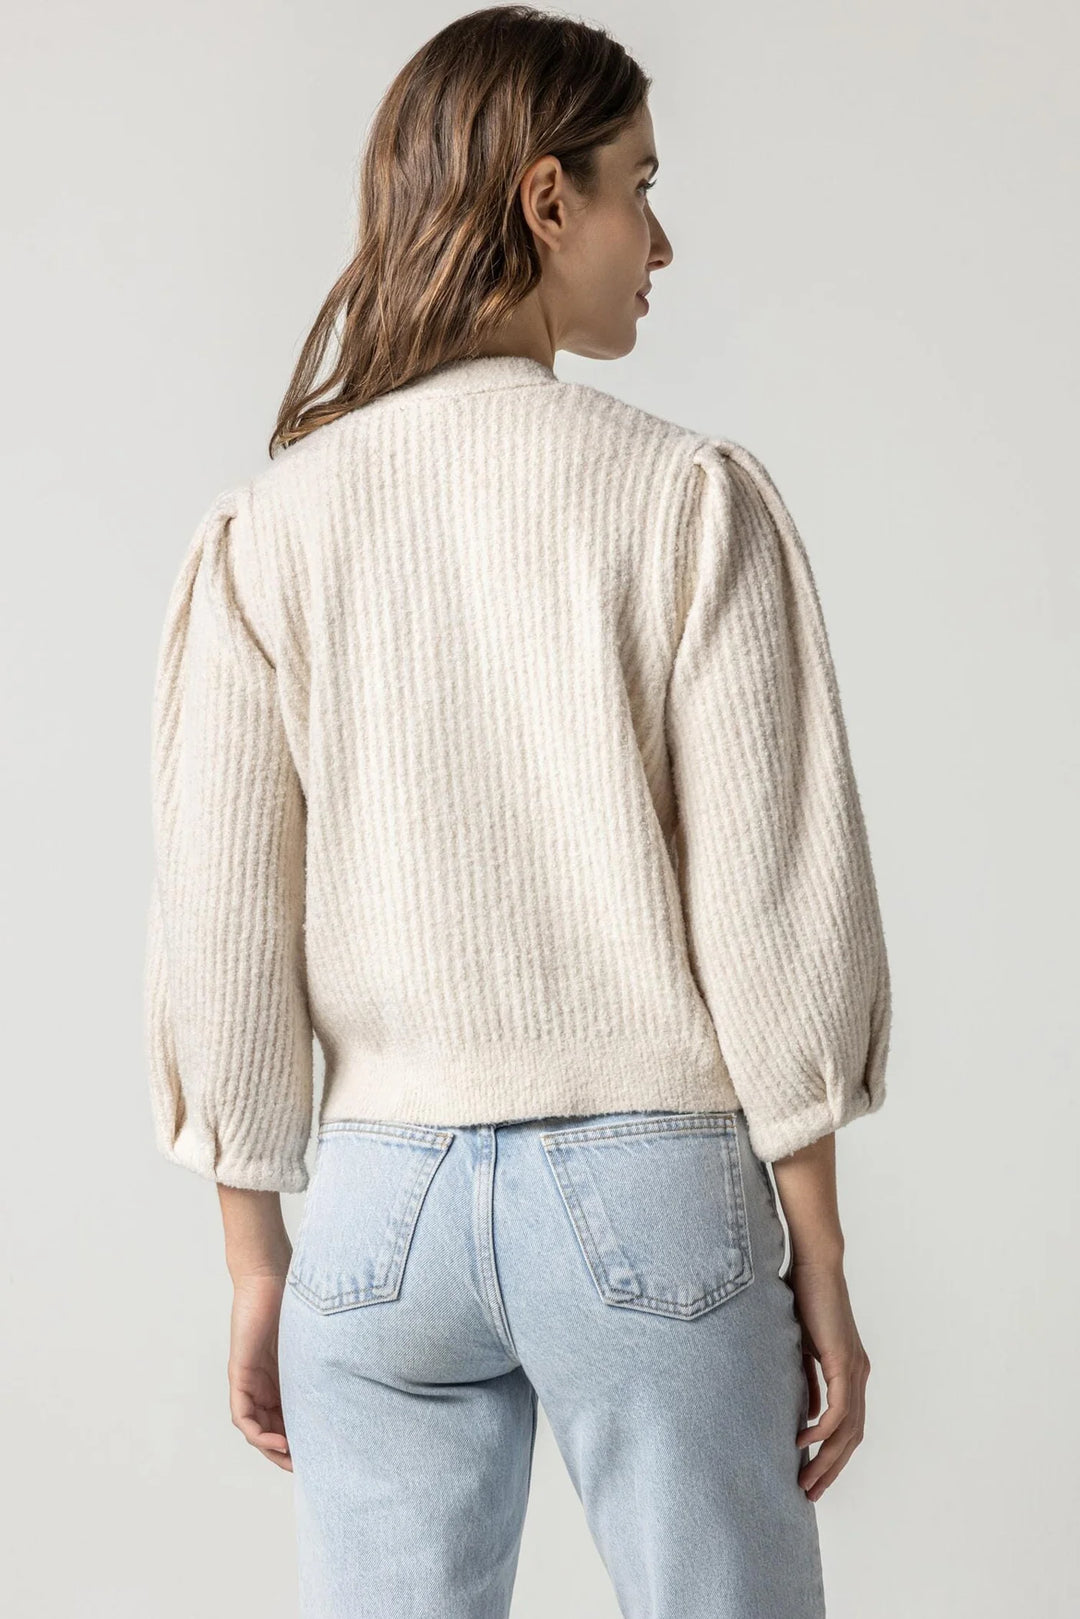 Puff Sleeve Cardigan Sweater